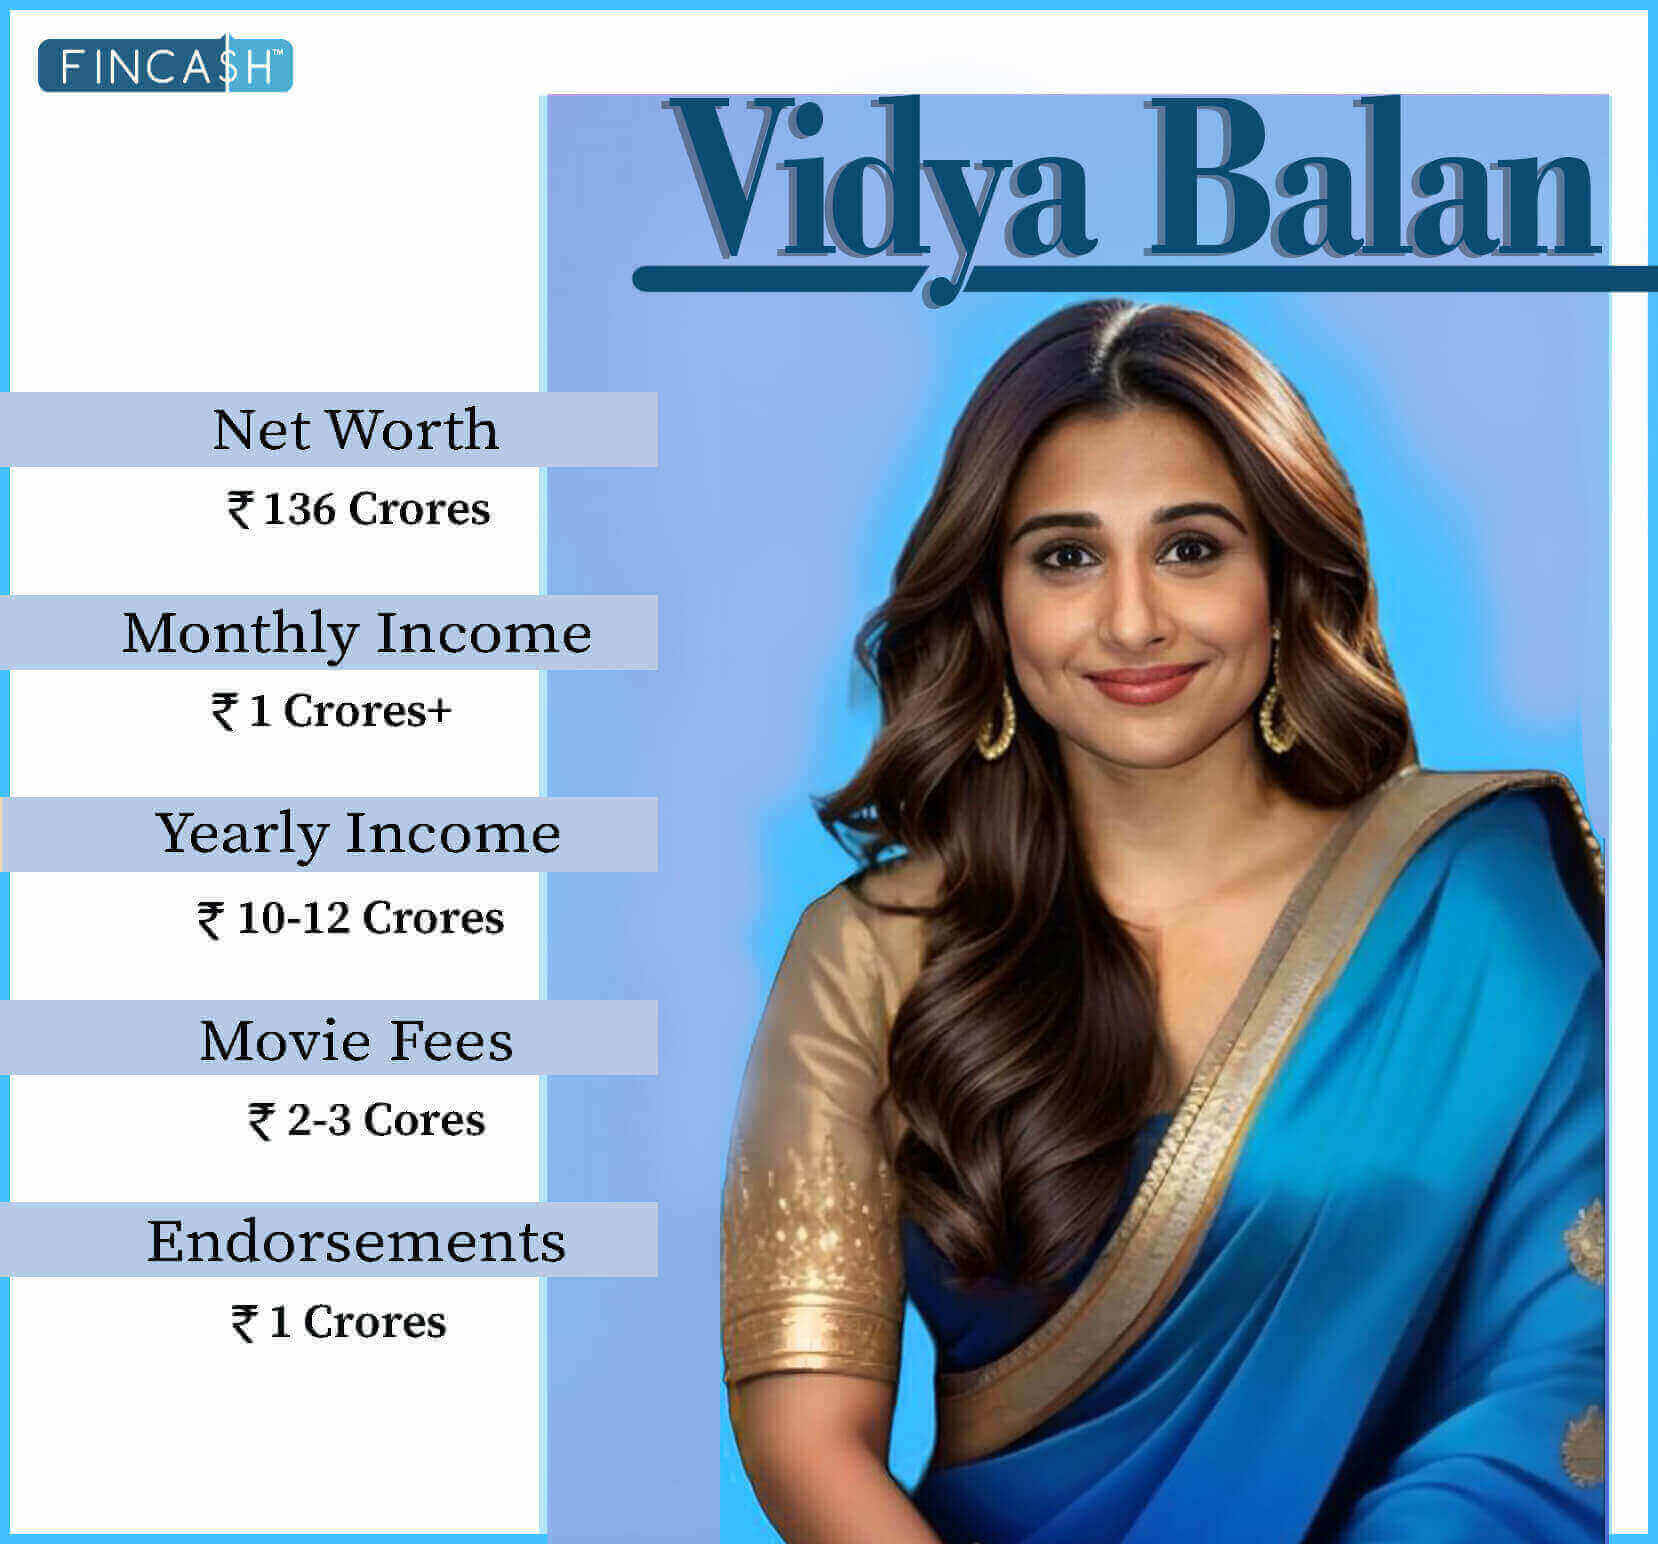 Vidya Balan net worth